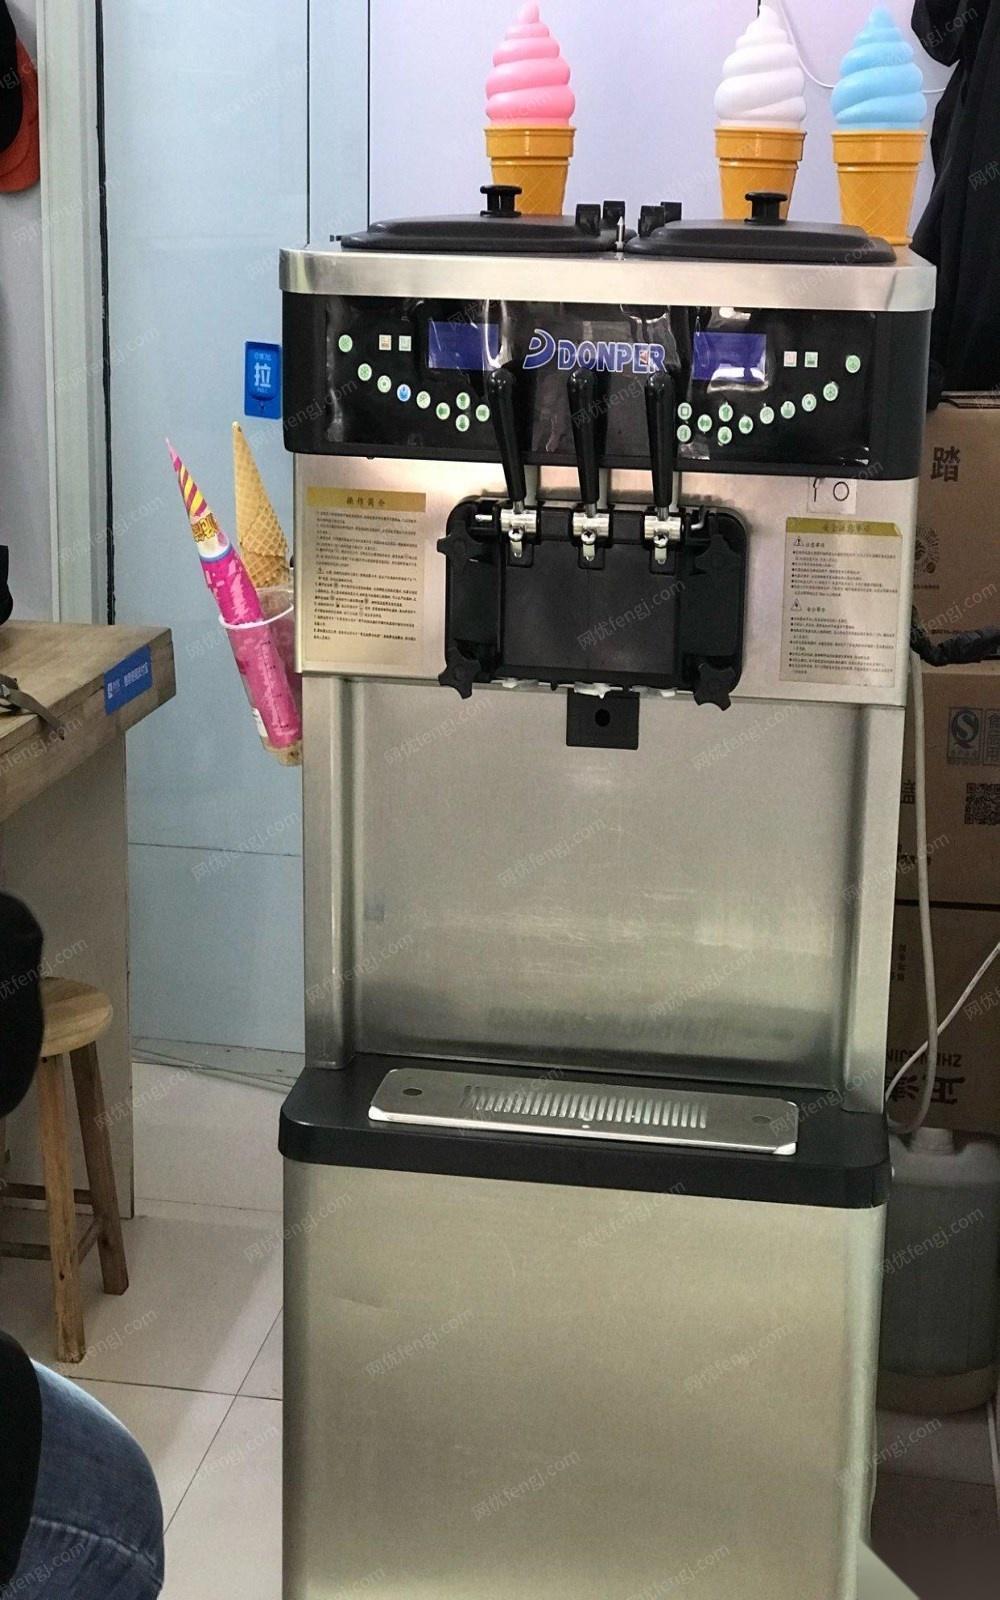 黑龙江哈尔滨东贝大容量冰激淋机出售 17999元